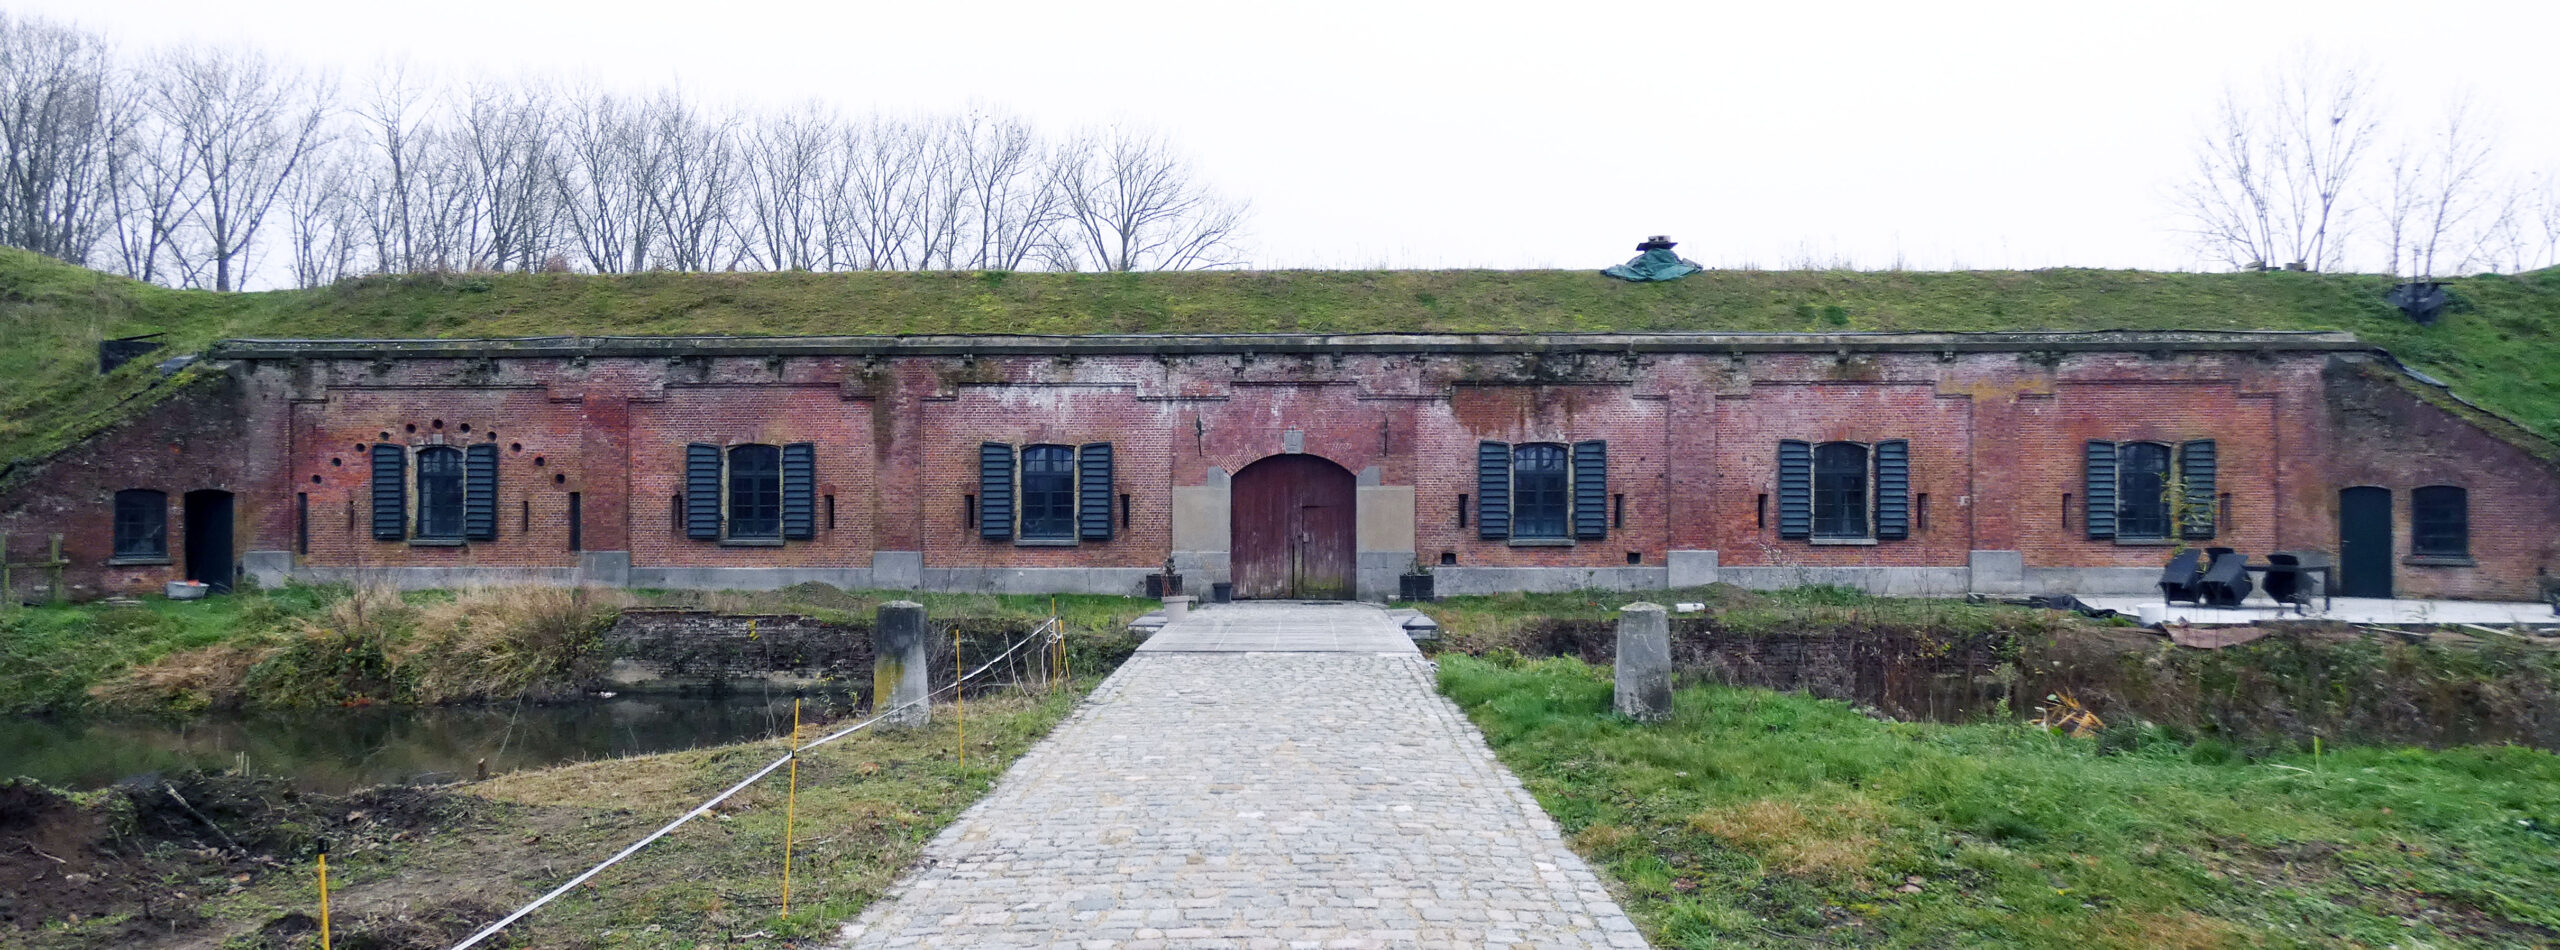 Fort Rozenbroek - Knusse thuis met schietgaten